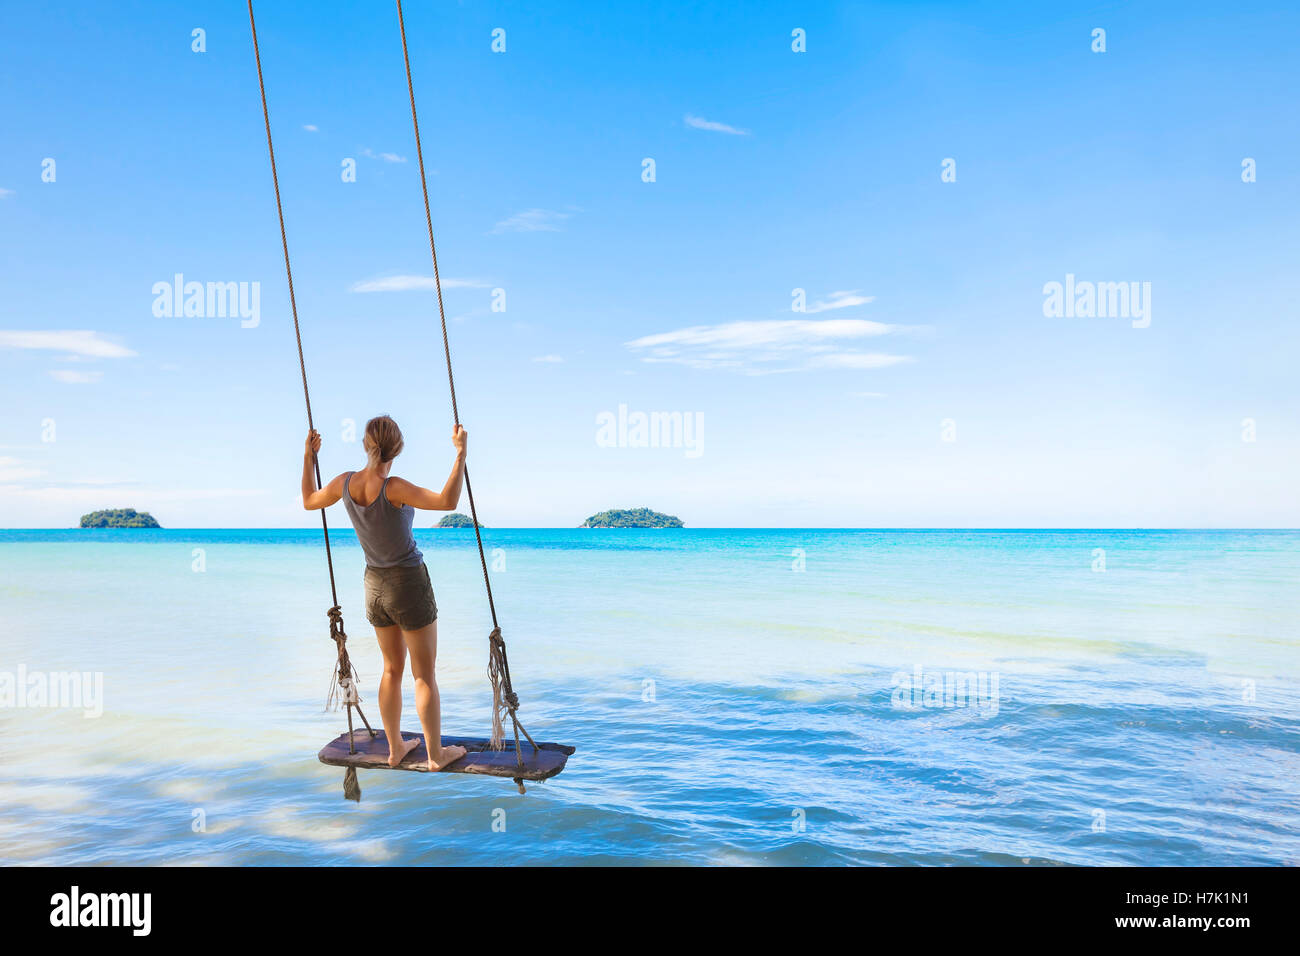 Happy girl swinging et reposant sur une corde avec un swing paradise tropical mer en arrière-plan - concept à propos des vacances Banque D'Images